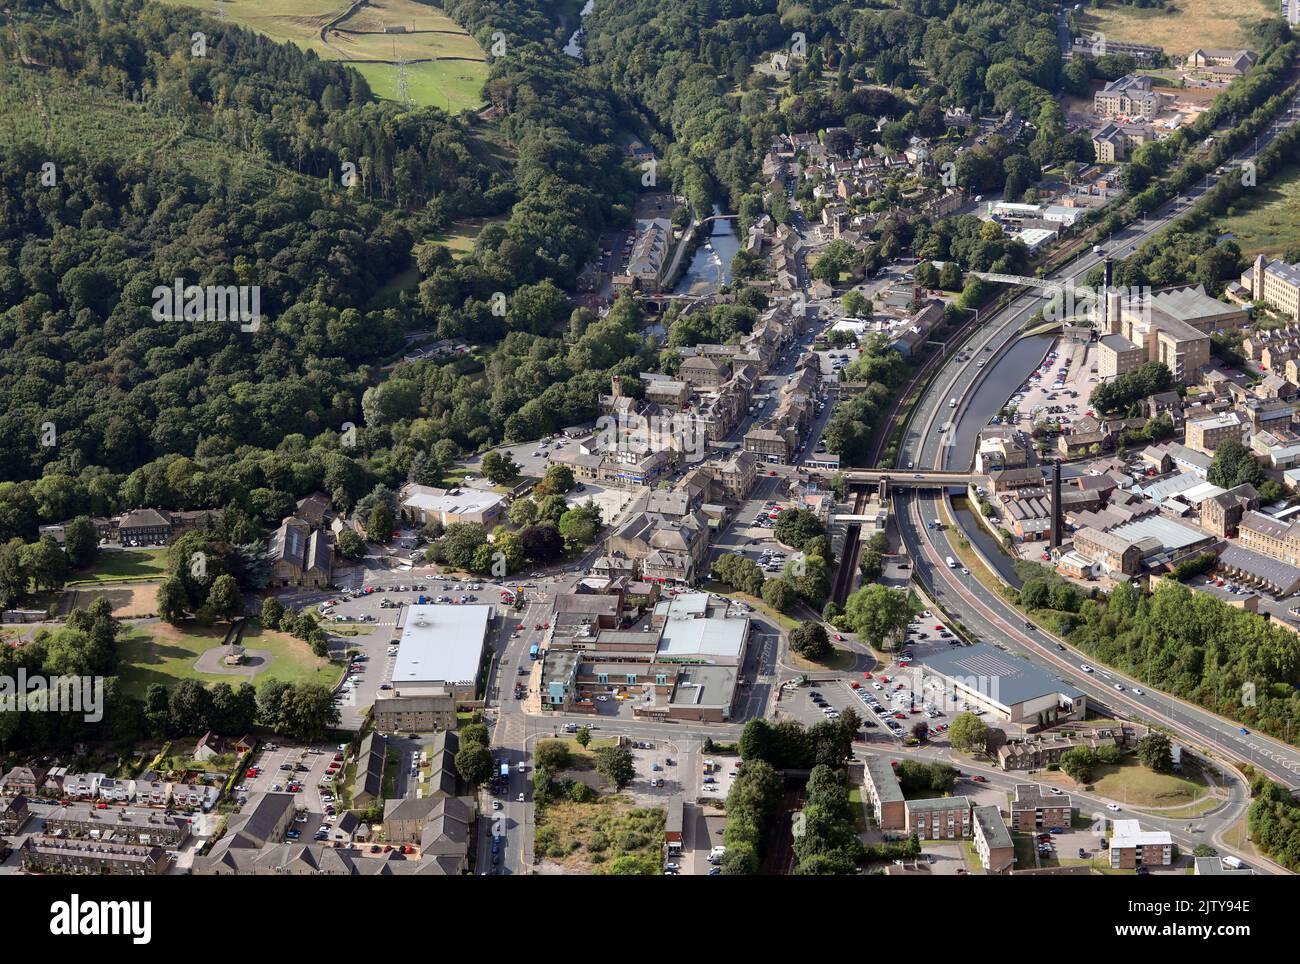 Vista aerea del mercato di Bingley nella valle del fiume Aire, a nord-ovest di Bradford, West Yorkshire Foto Stock